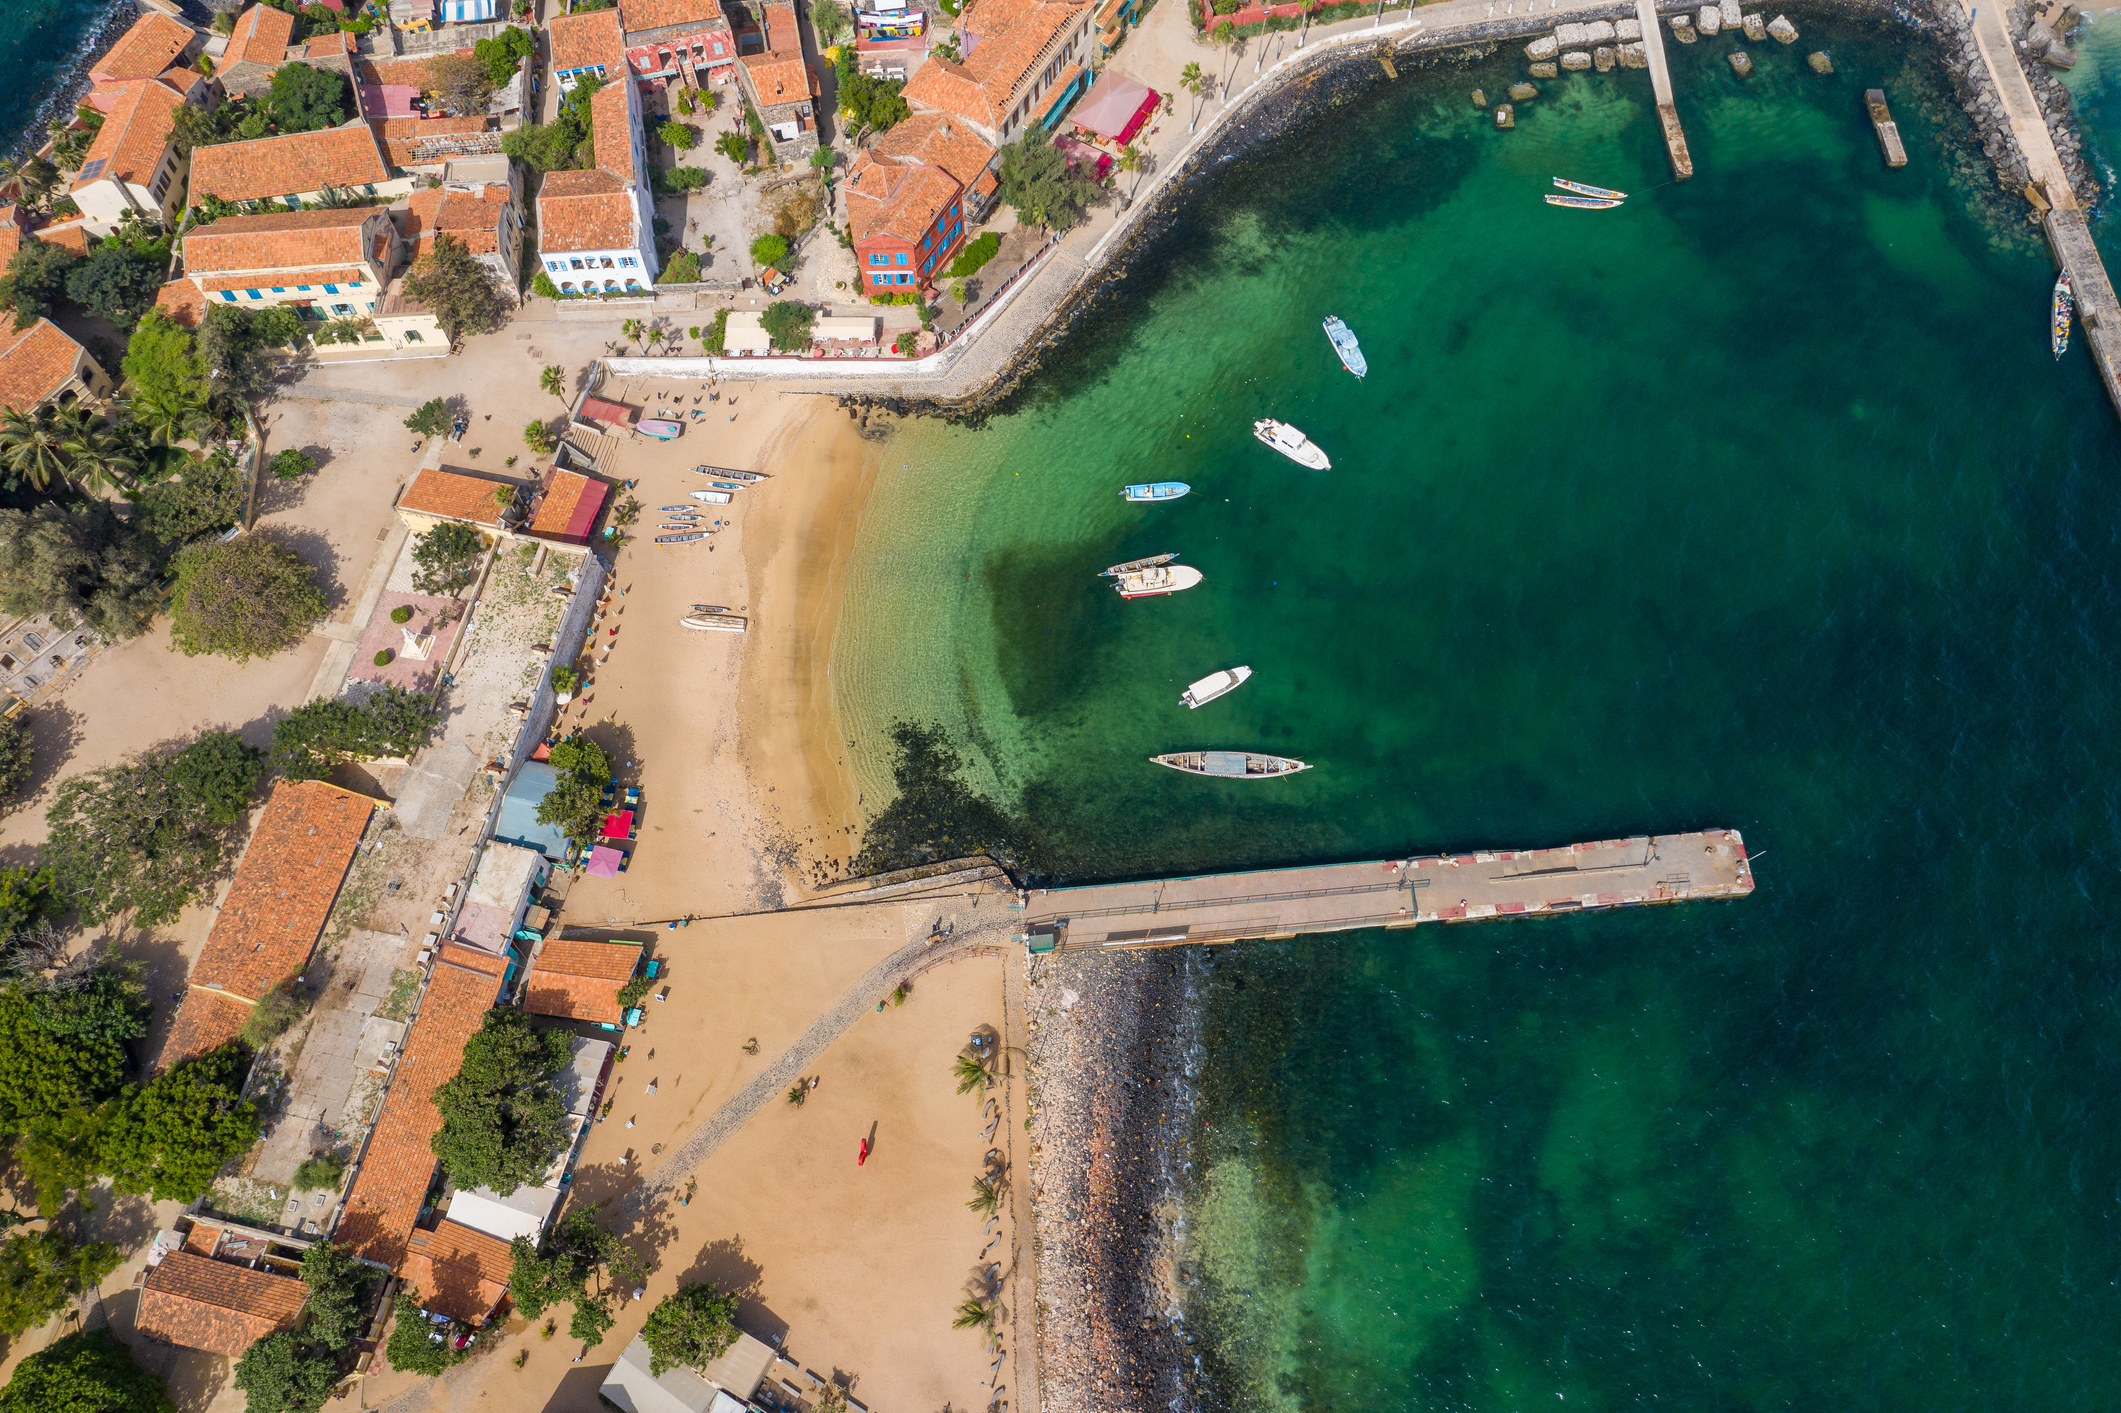 An aerial view of a coastal town.